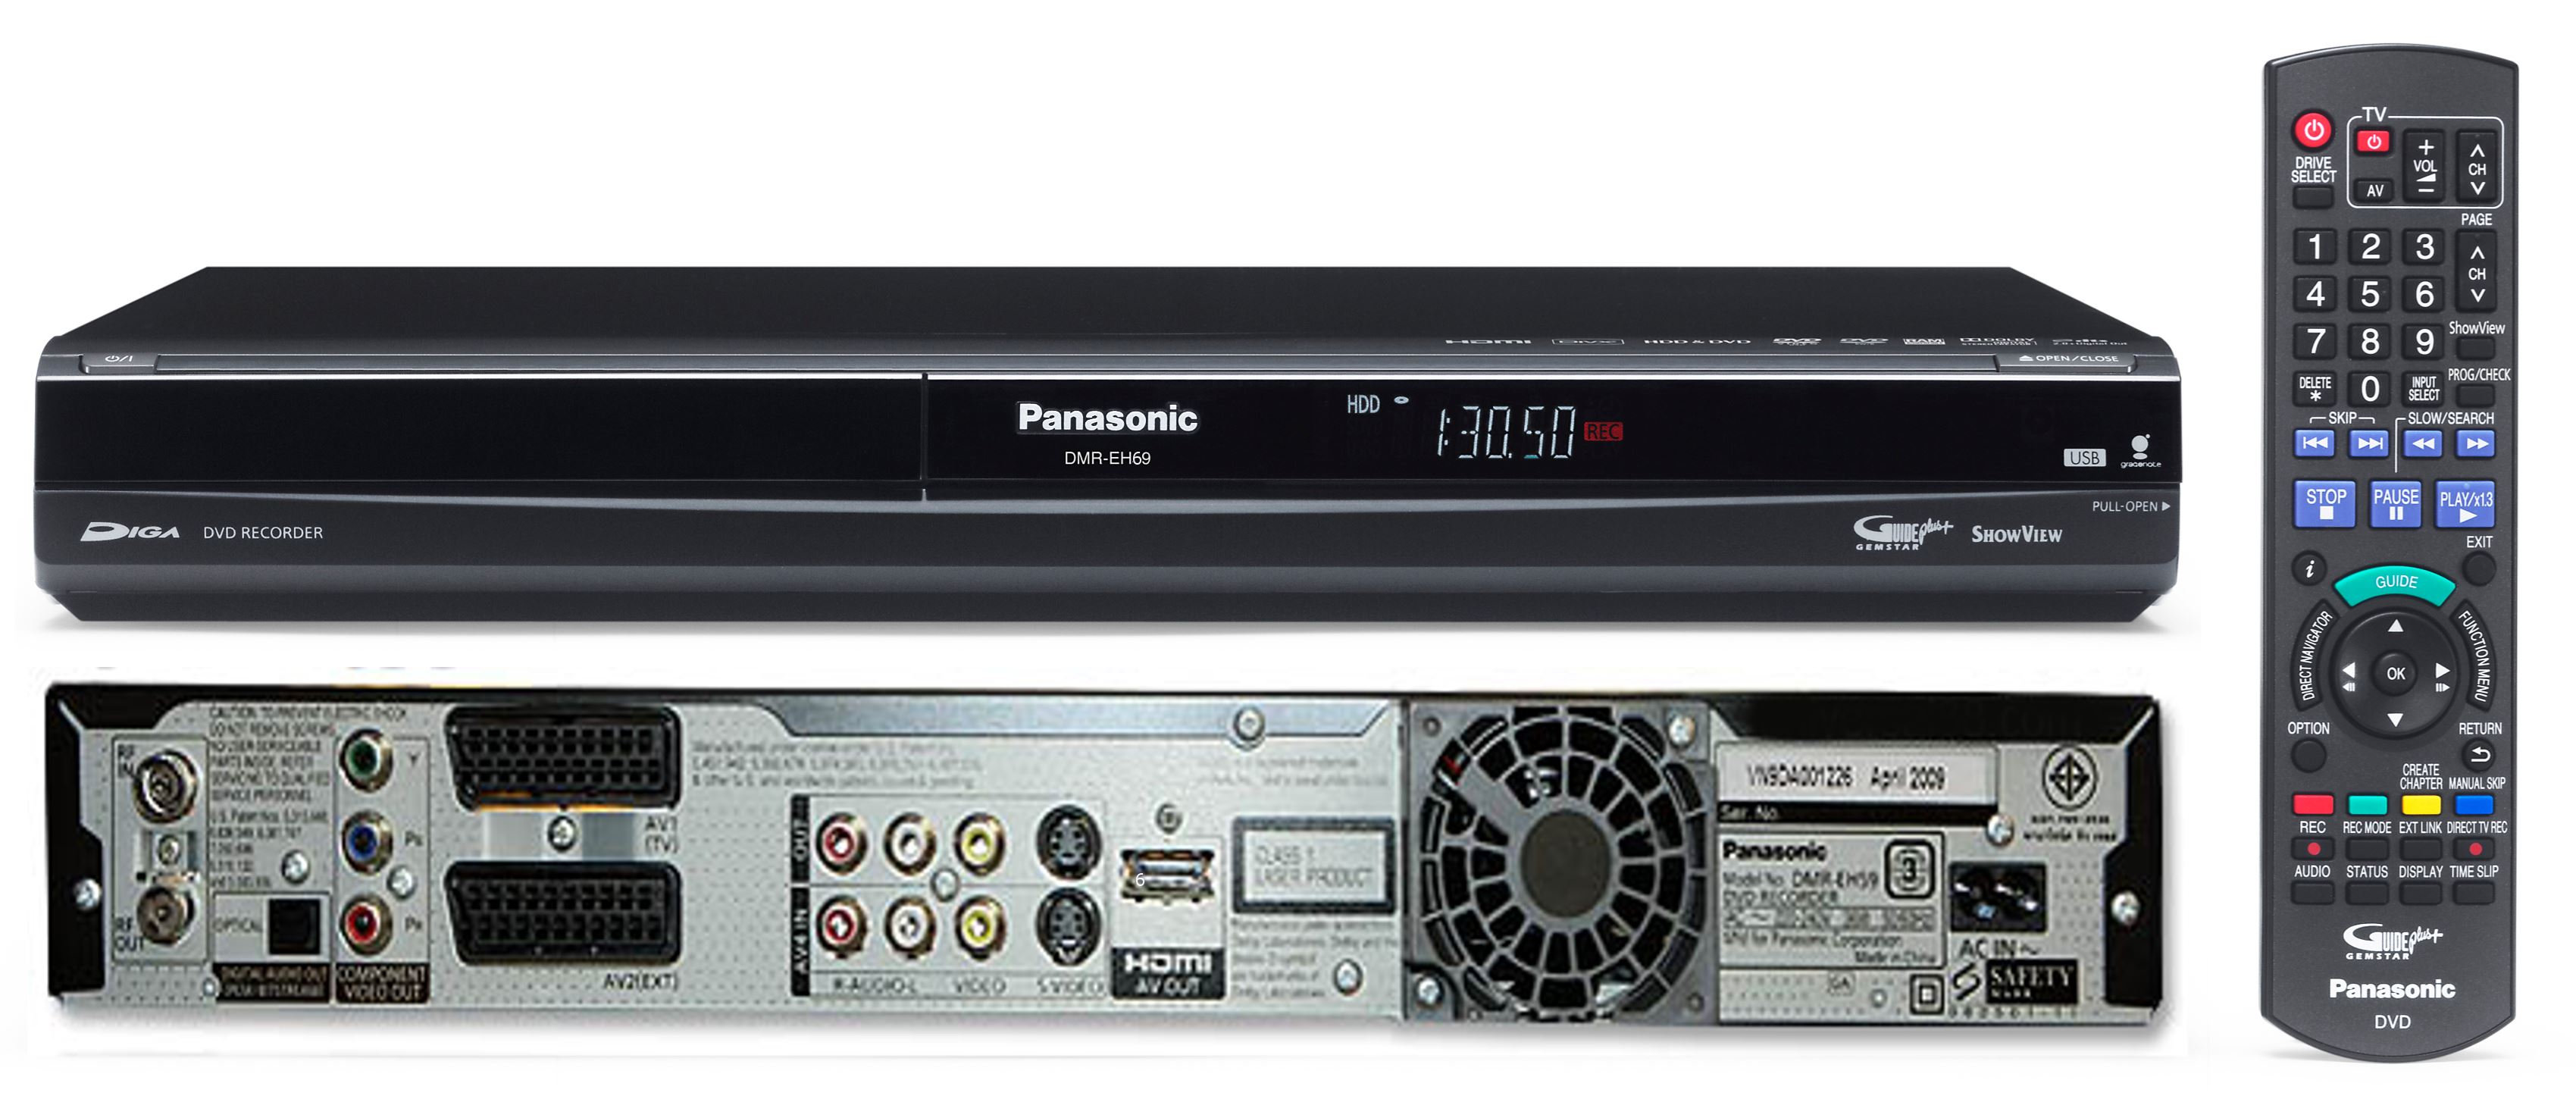 Panasonic DMR-EH69 320GB Hard Drive DVD Recorder PAL NTSC SYSTEM